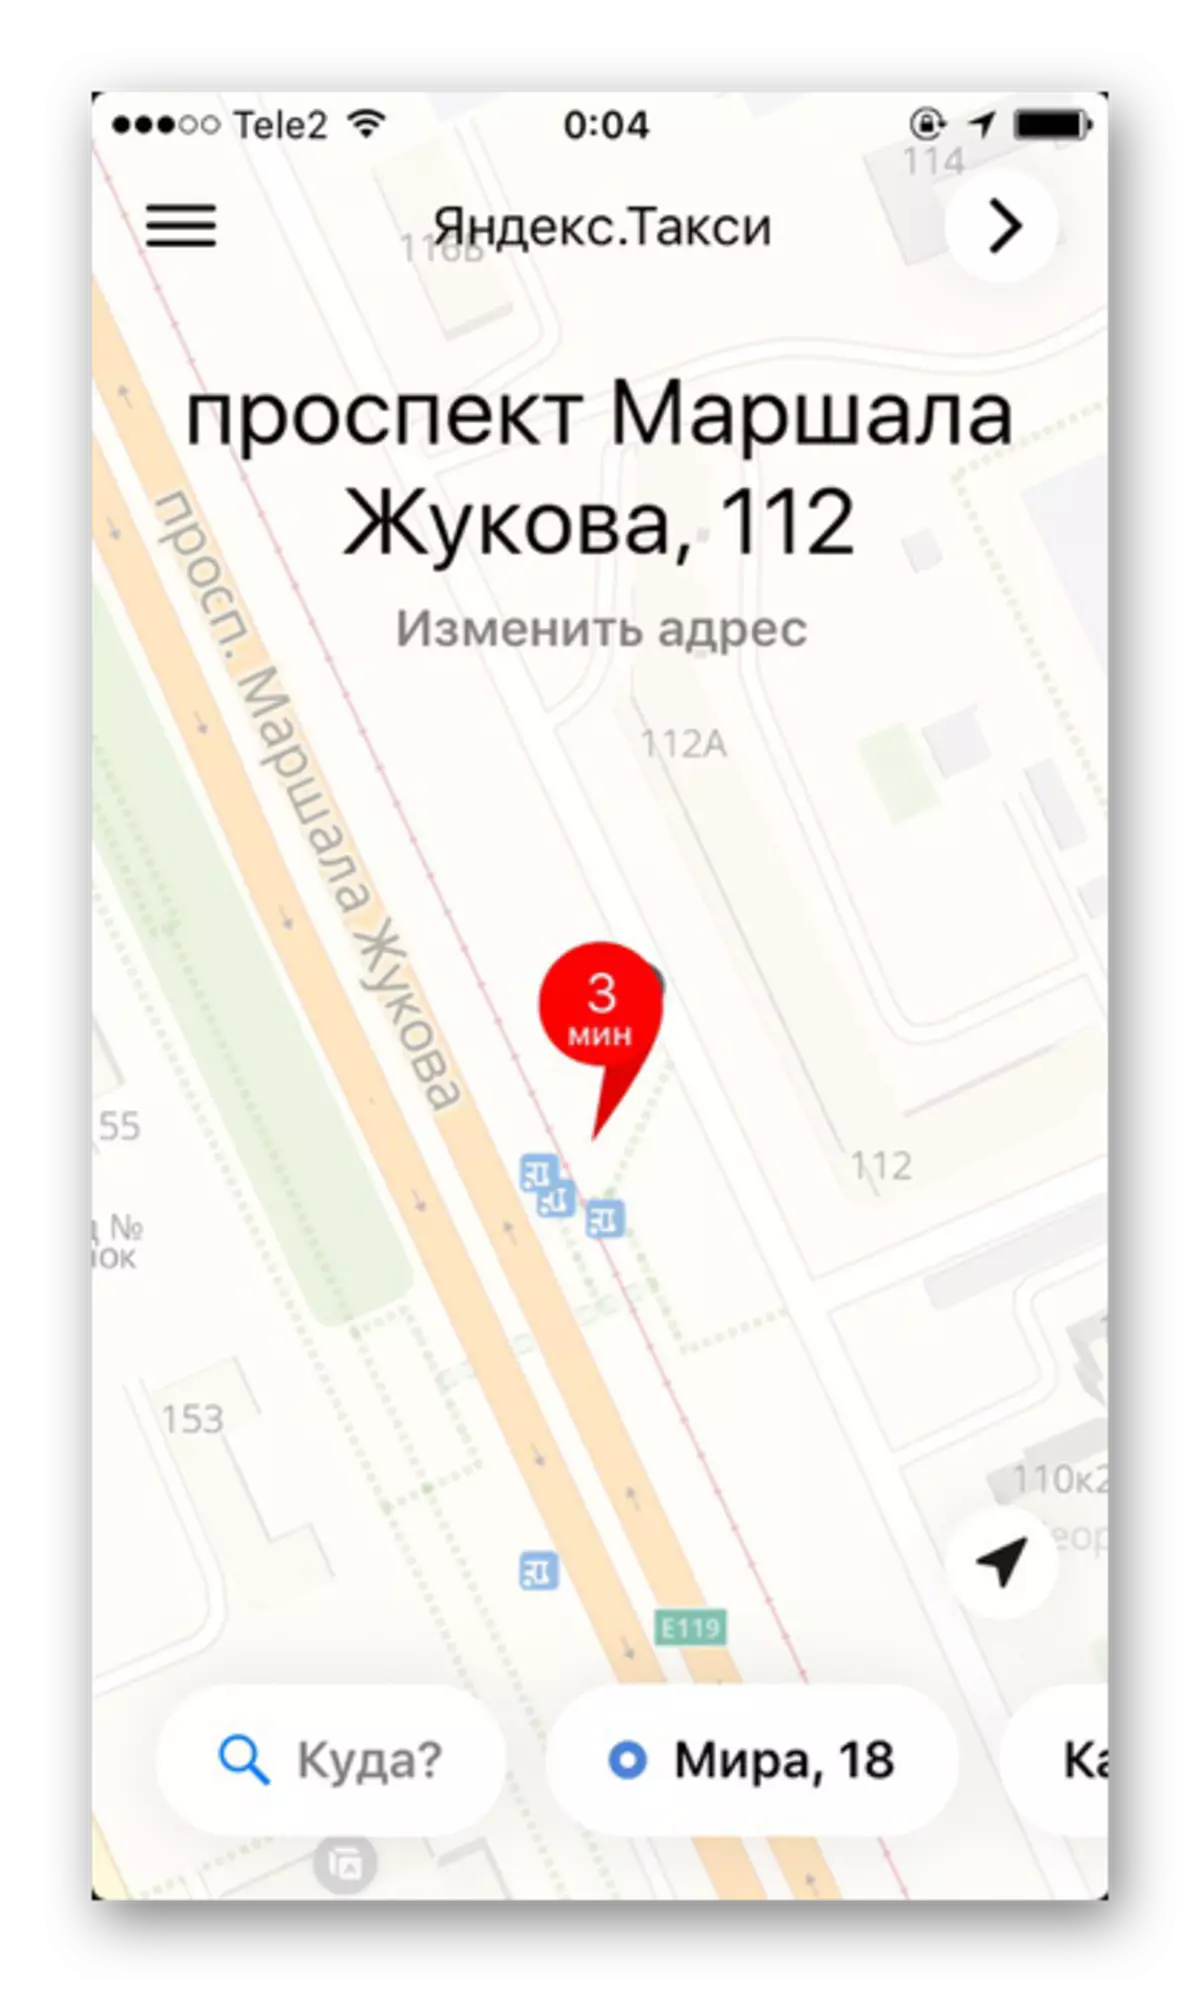 Mappa dell'area con una designazione dettagliata di strade e case in applicazione Yandex.taxi su iPhone